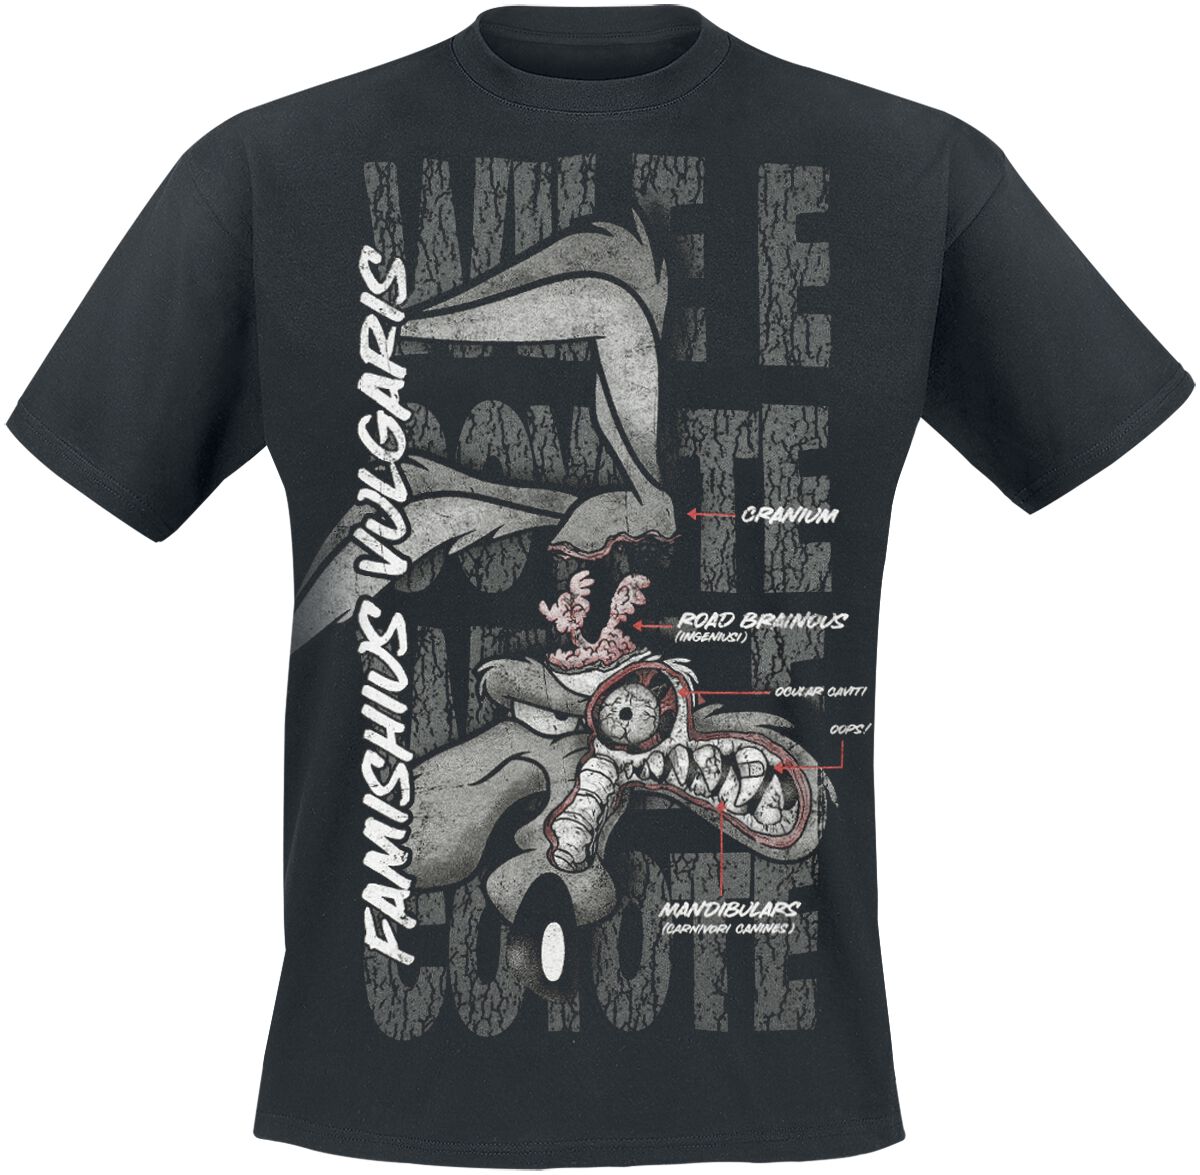 Looney Tunes T-Shirt - Coyote - Famishius Vulgaris - S bis 3XL - für Männer - Größe L - schwarz  - EMP exklusives Merchandise!